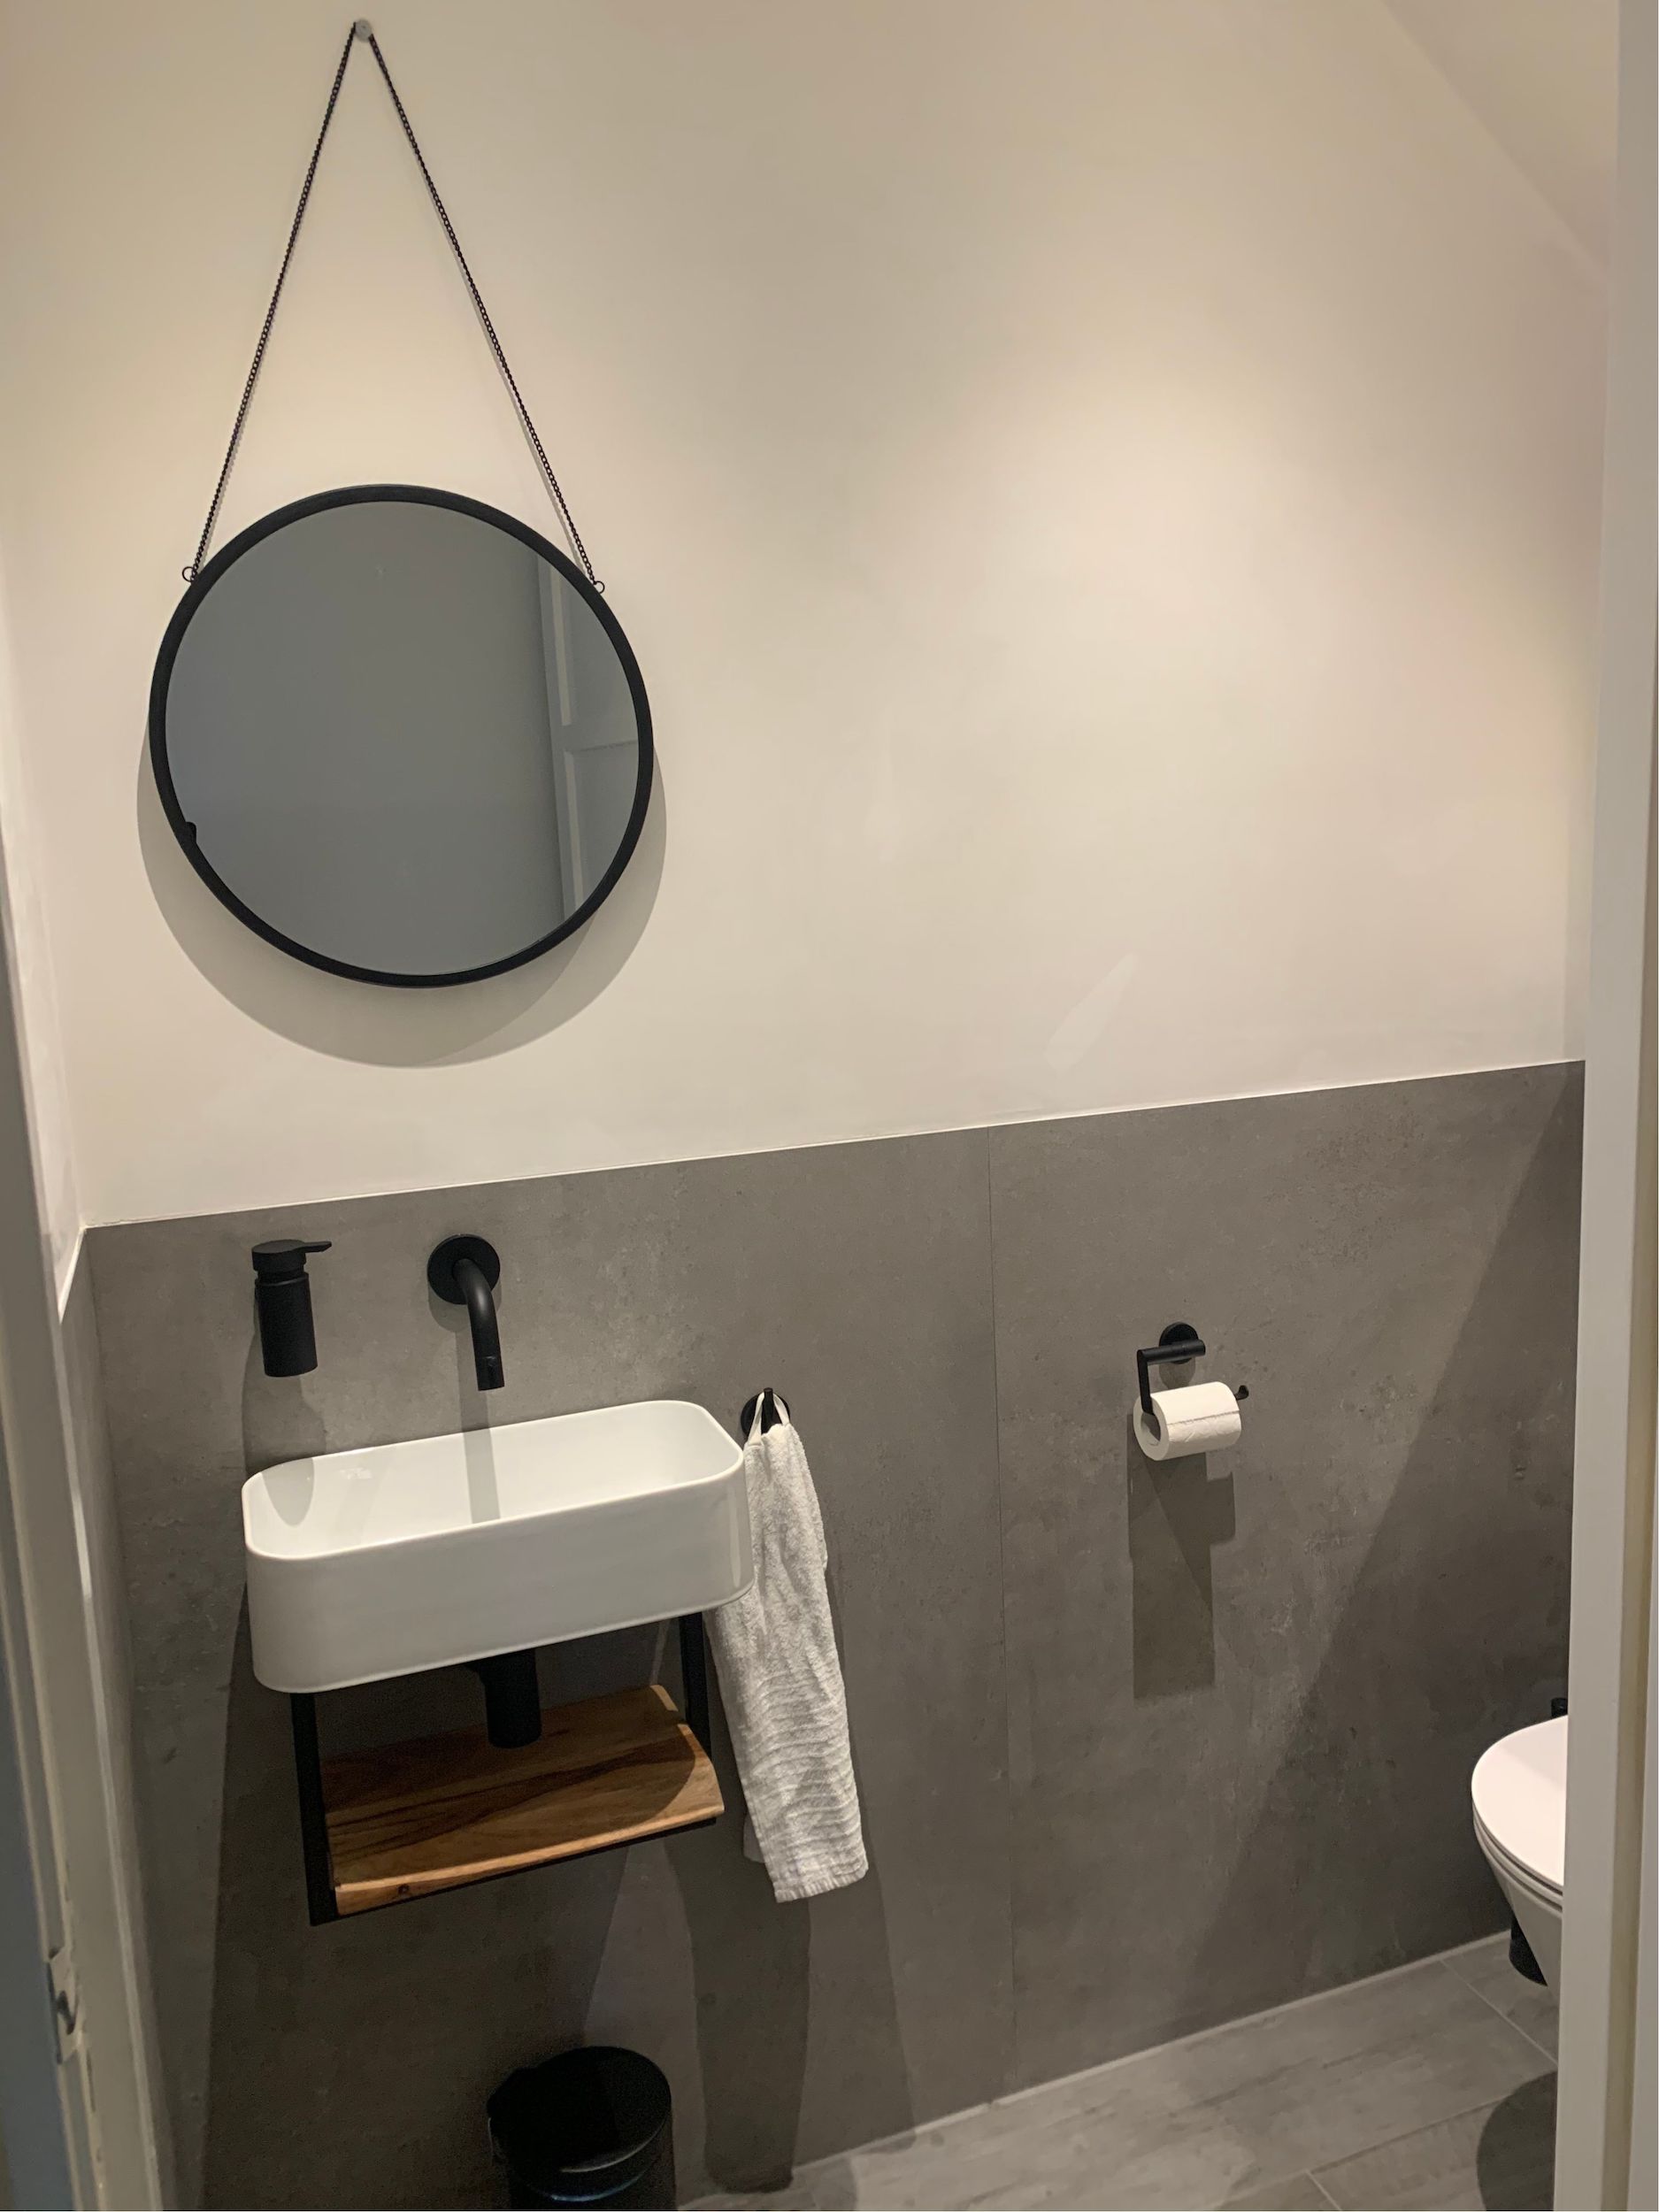 Bizot Installatietechniek – Project toilet verbouwing 2021 5